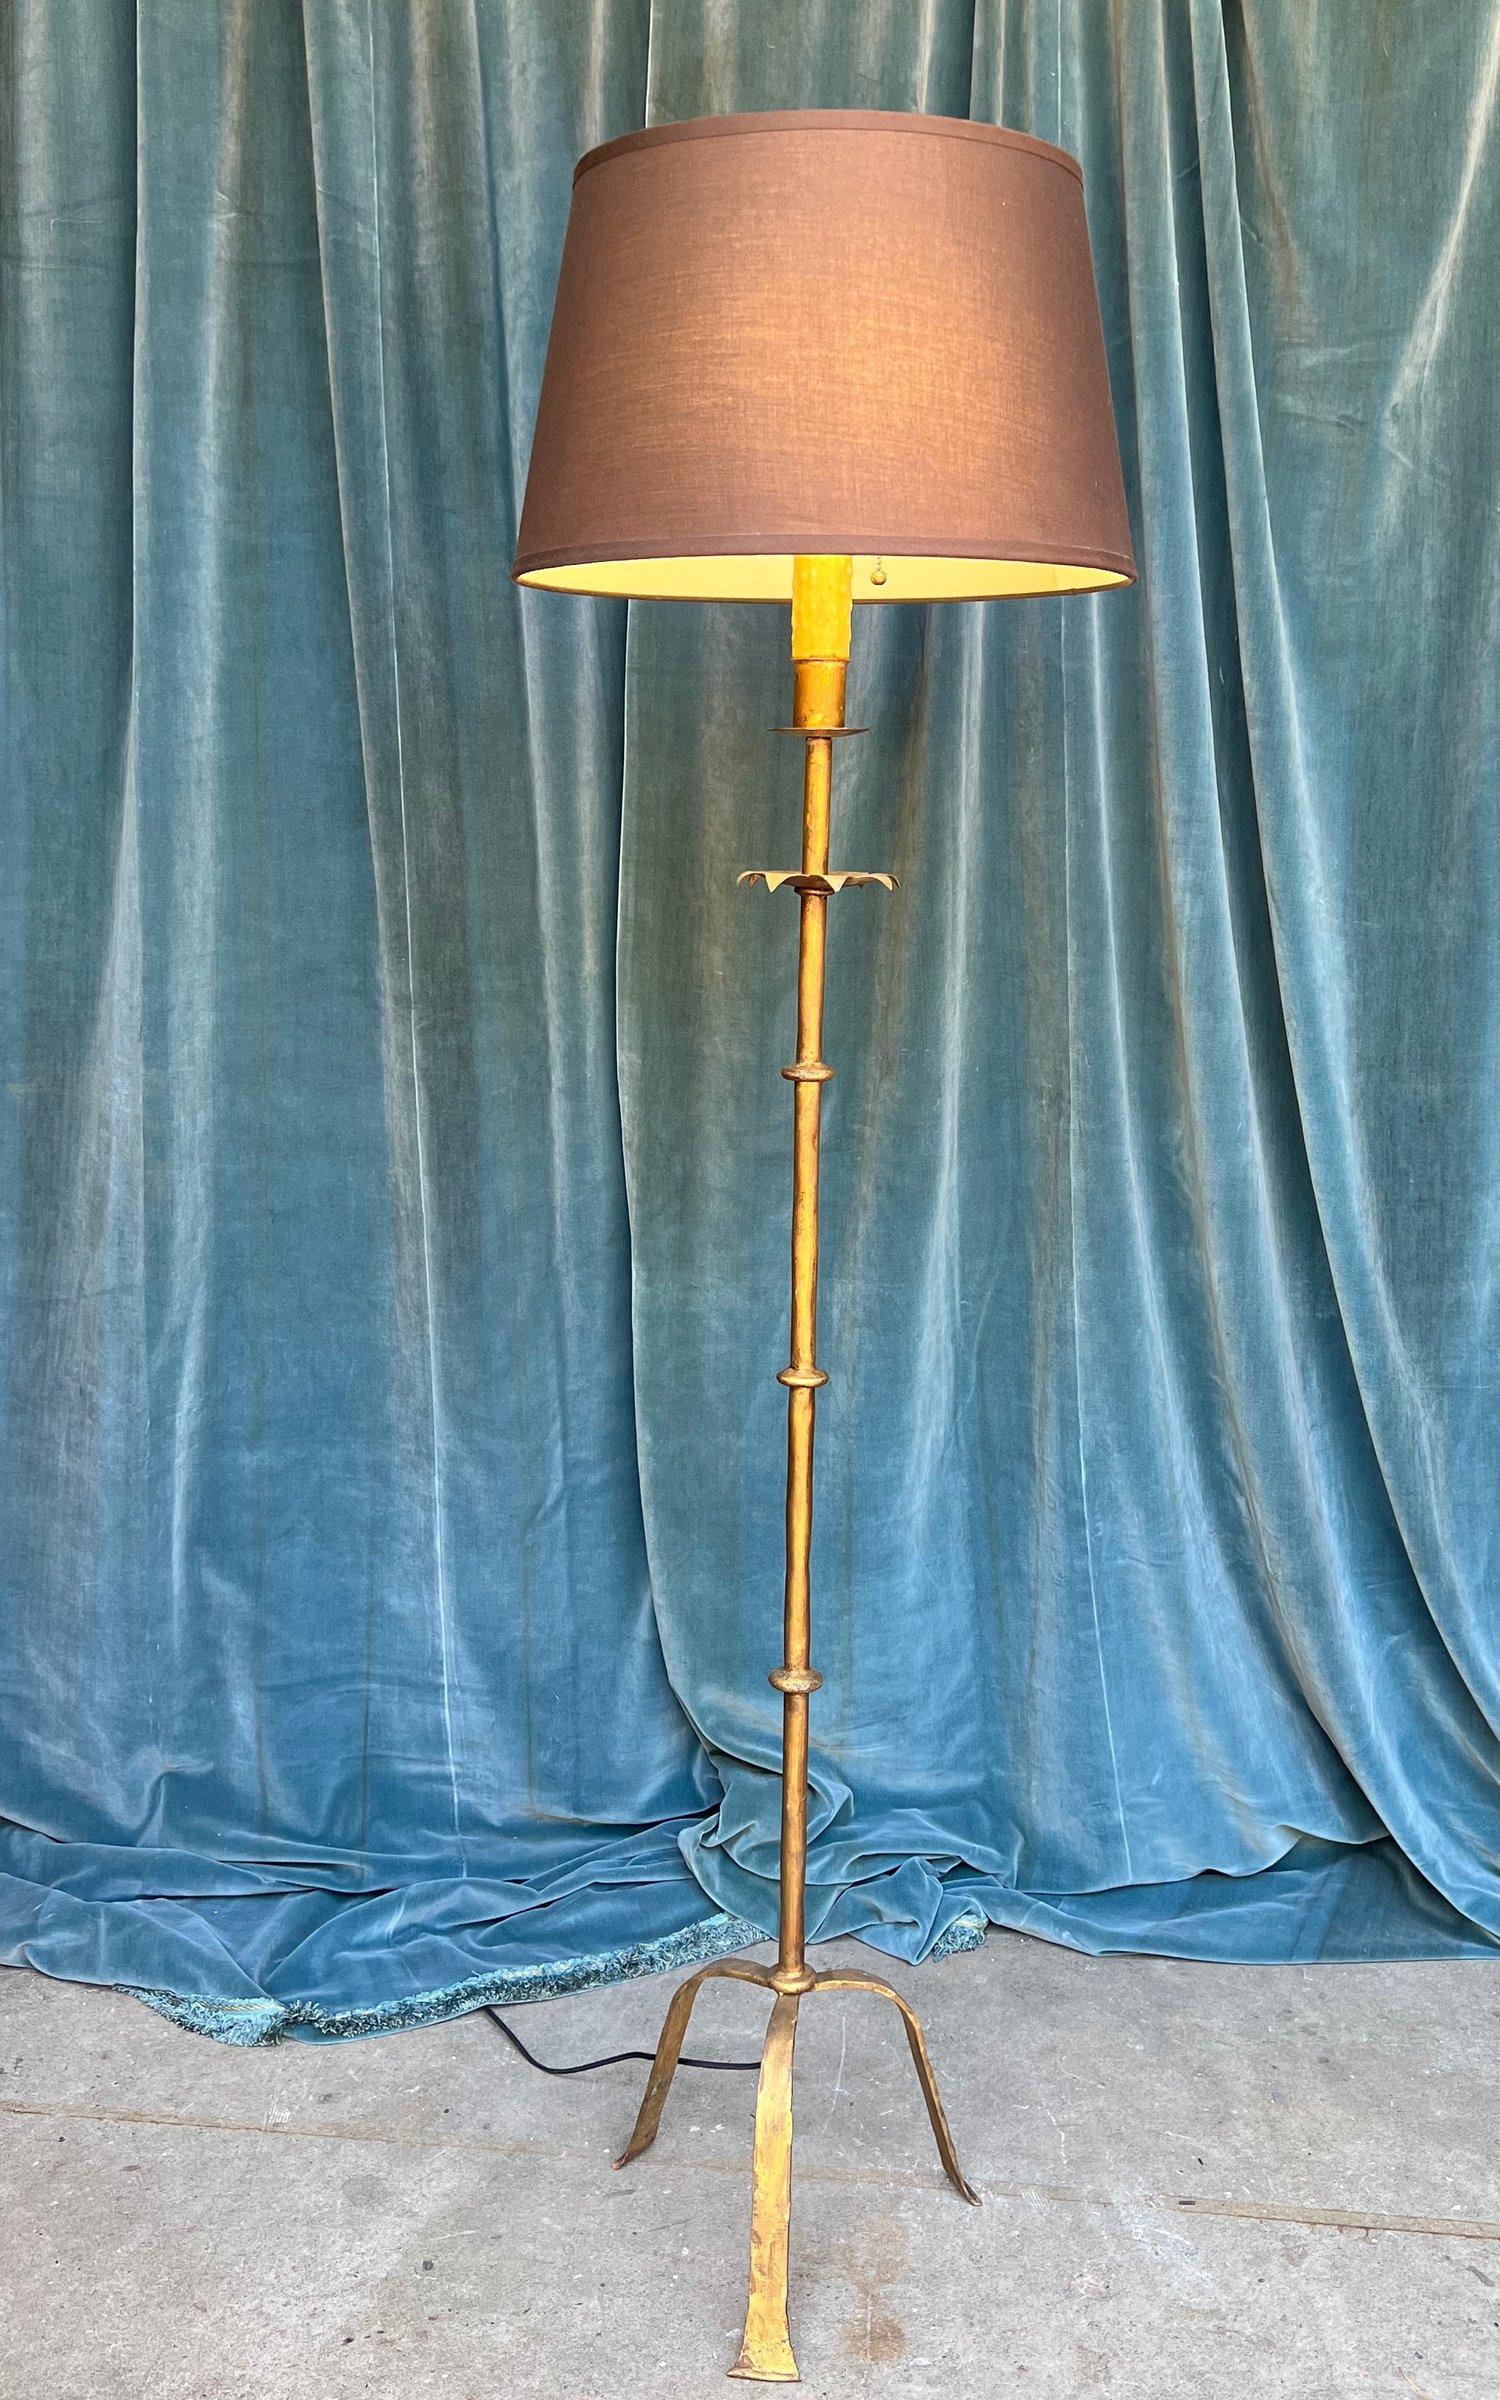 Ce lampadaire espagnol en fer forgé des années 1950 est une incarnation de l'élégance et de la grâce, parfait pour illuminer n'importe quelle pièce. La base allongée et surélevée du trépied, finie dans une riche patine dorée foncée, ajoute une